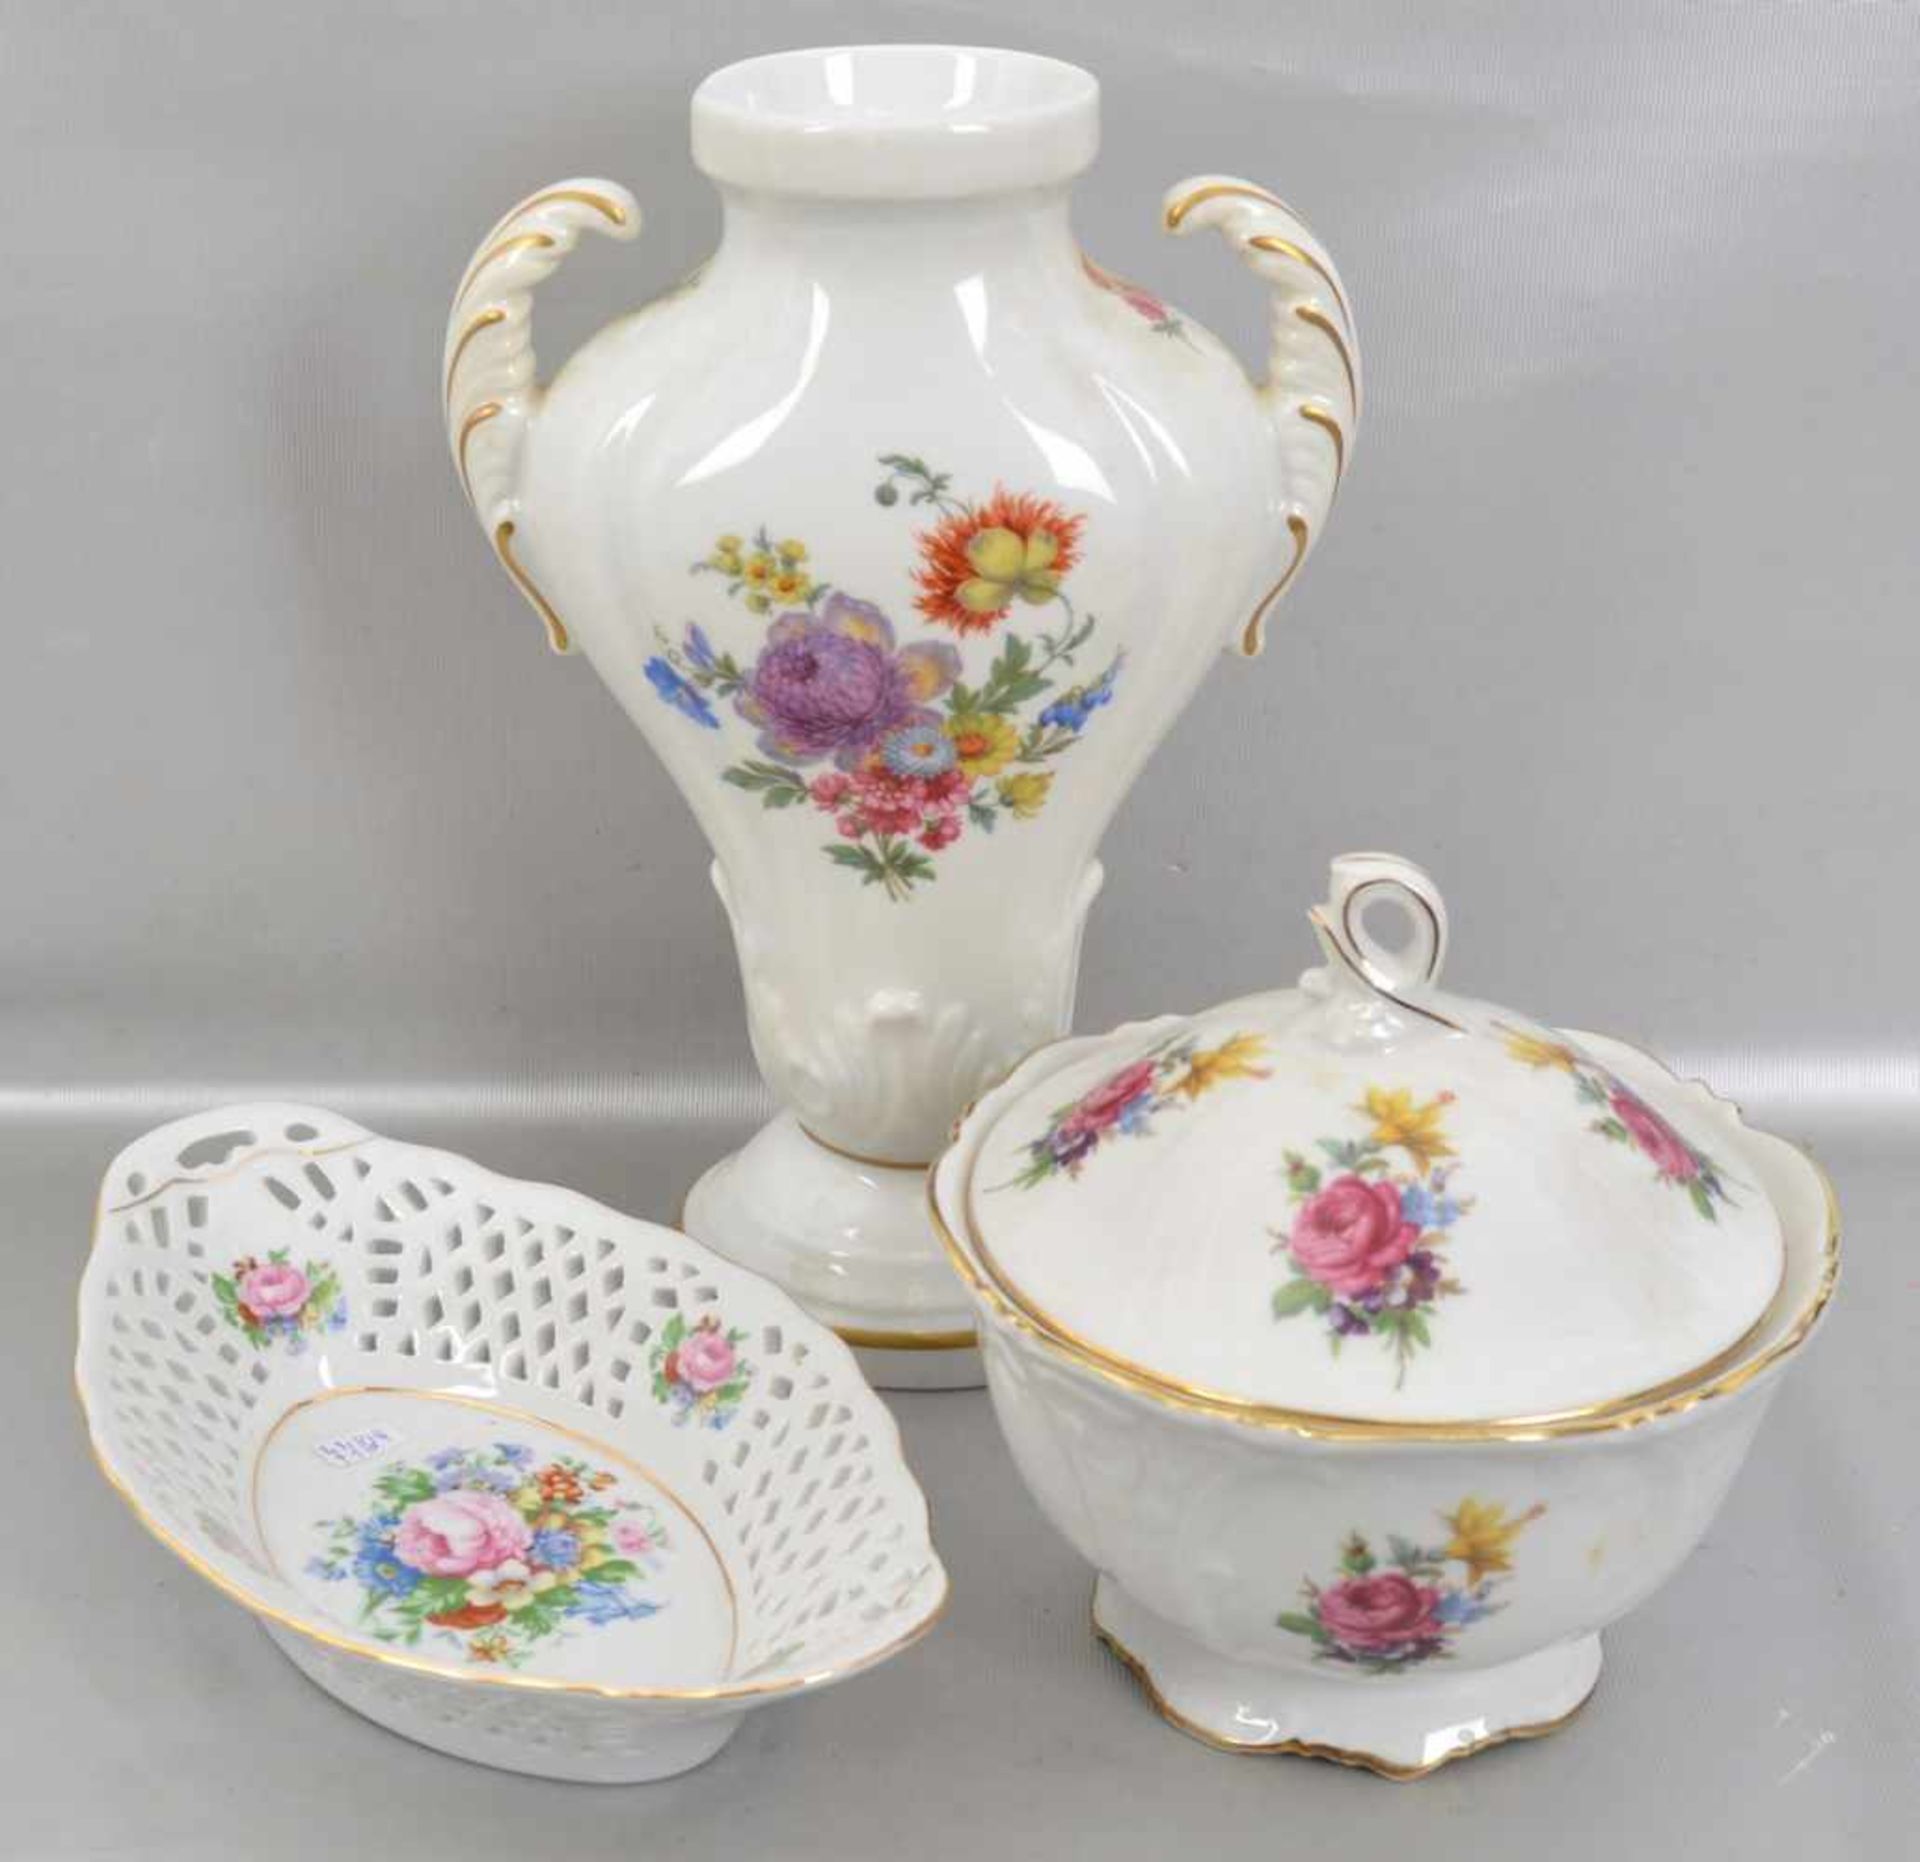 Konvolut drei Teile Porzellan, Vase, Dose und Schale, gold verziert und mit bunter Blumenverzierung